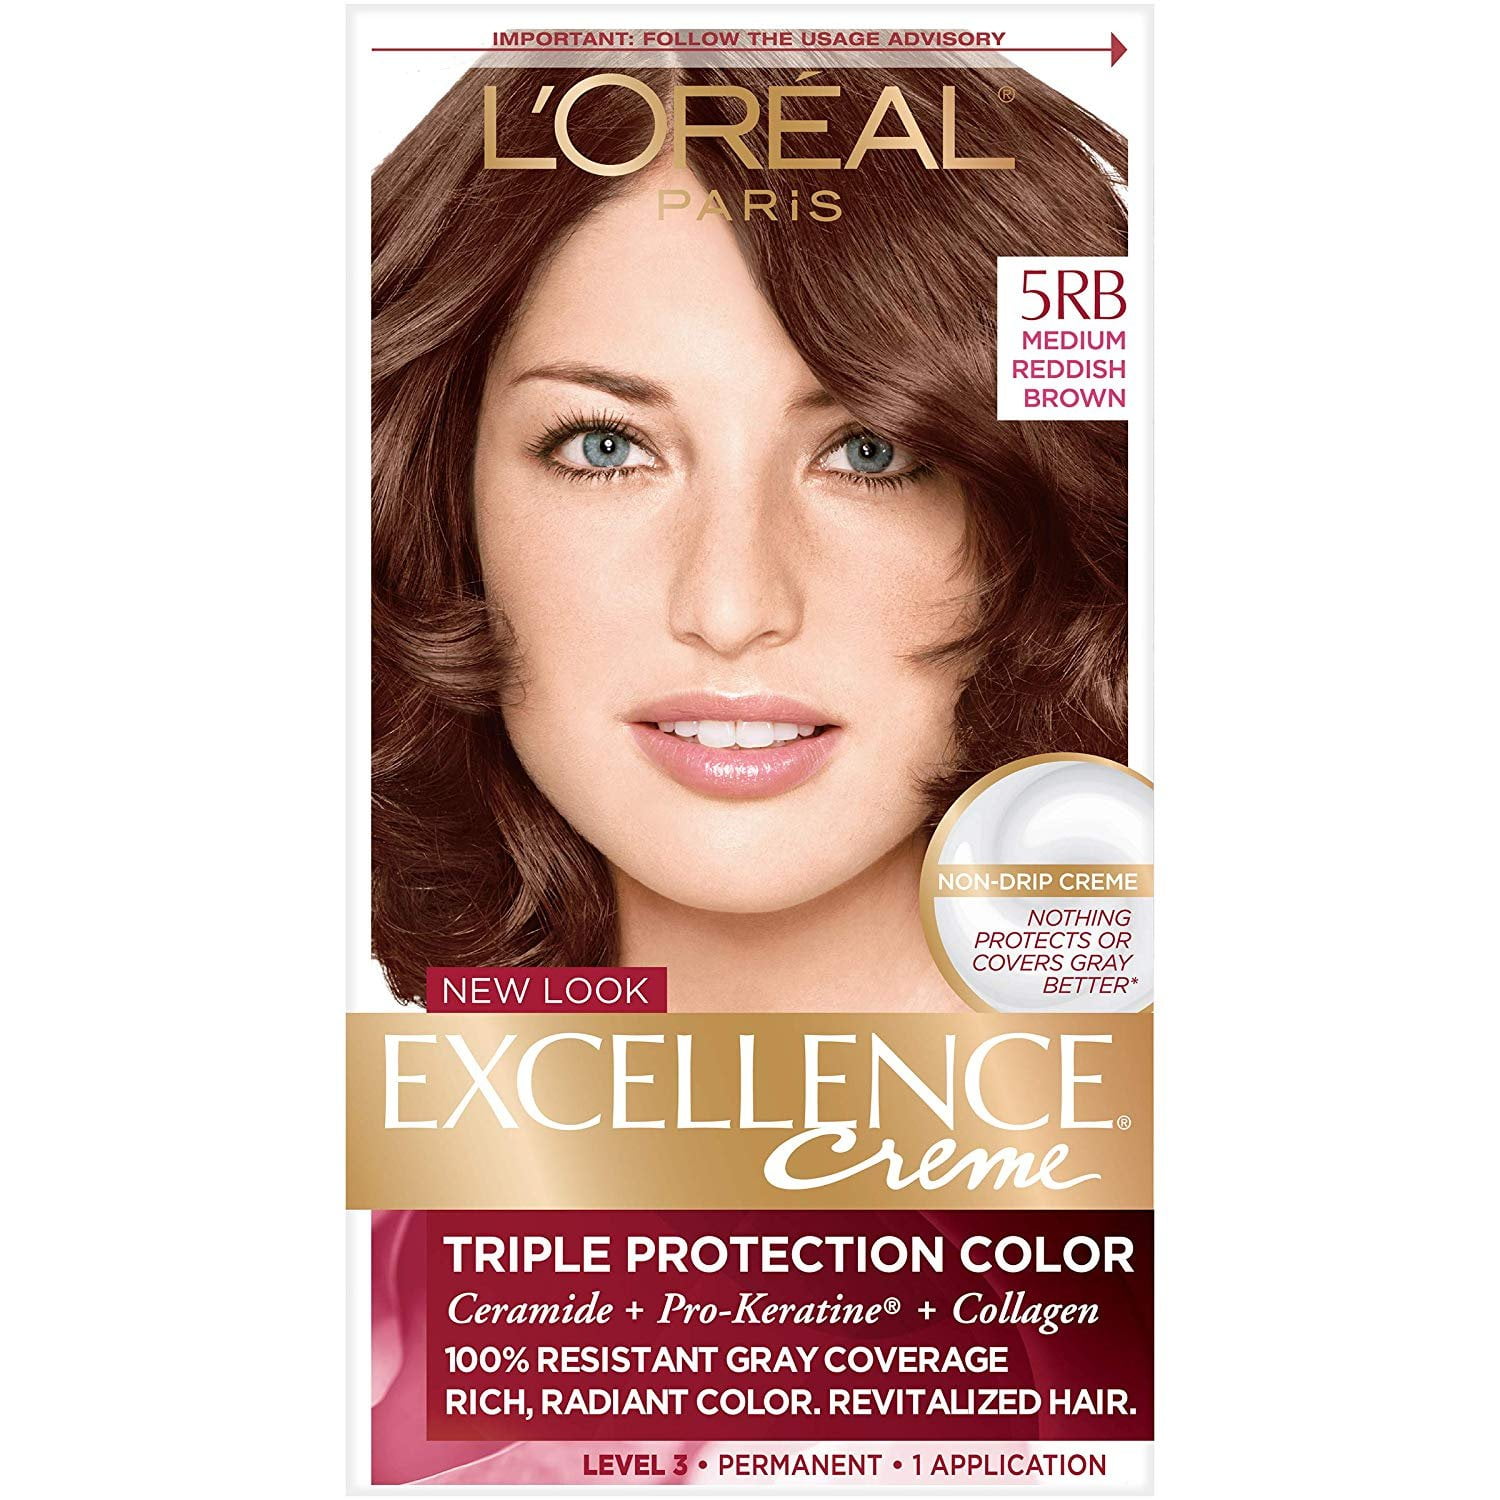 L'Oréal Paris Excellence Créme Permanent Hair Color, 5RB Medium Reddish ...